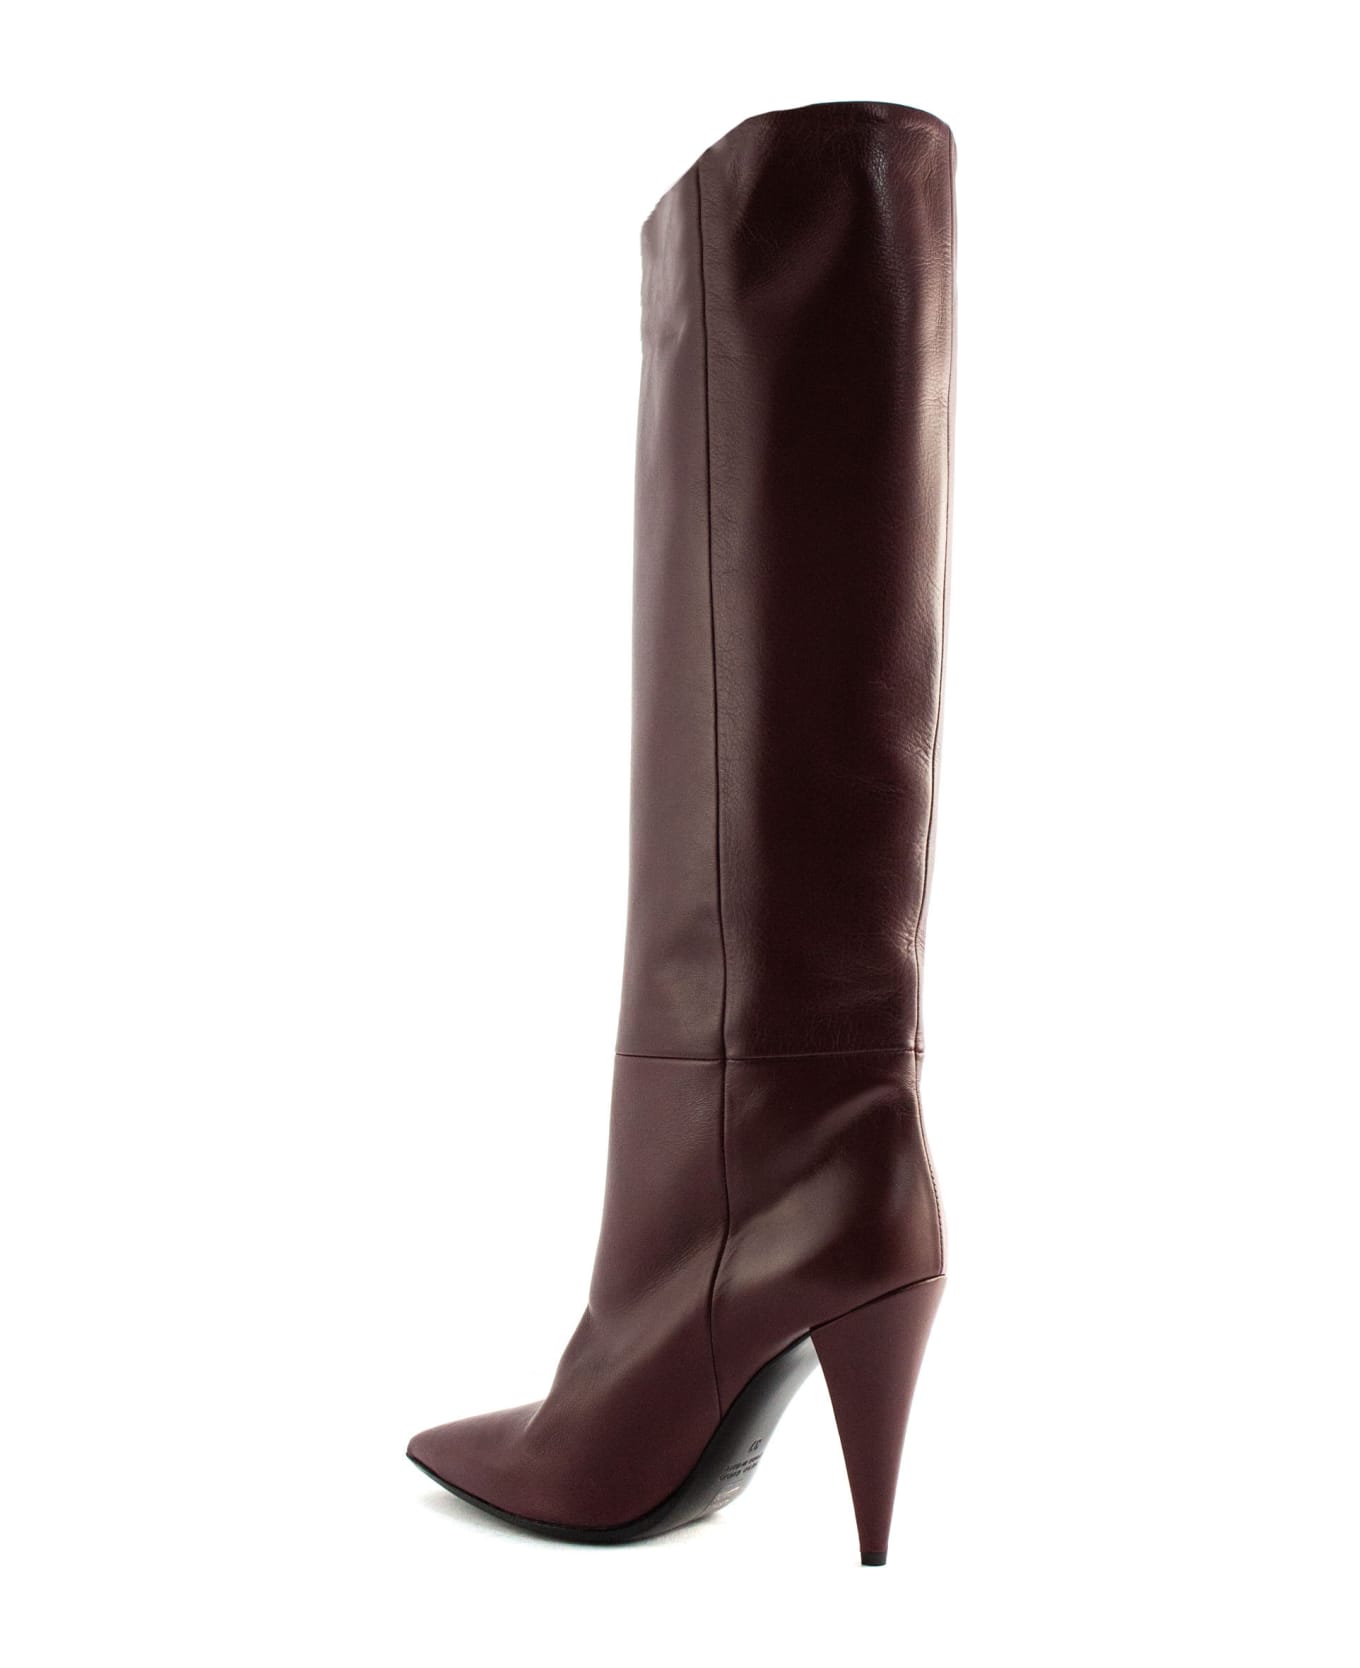 Strategia Bordeaux Leather High Boots - Bordo